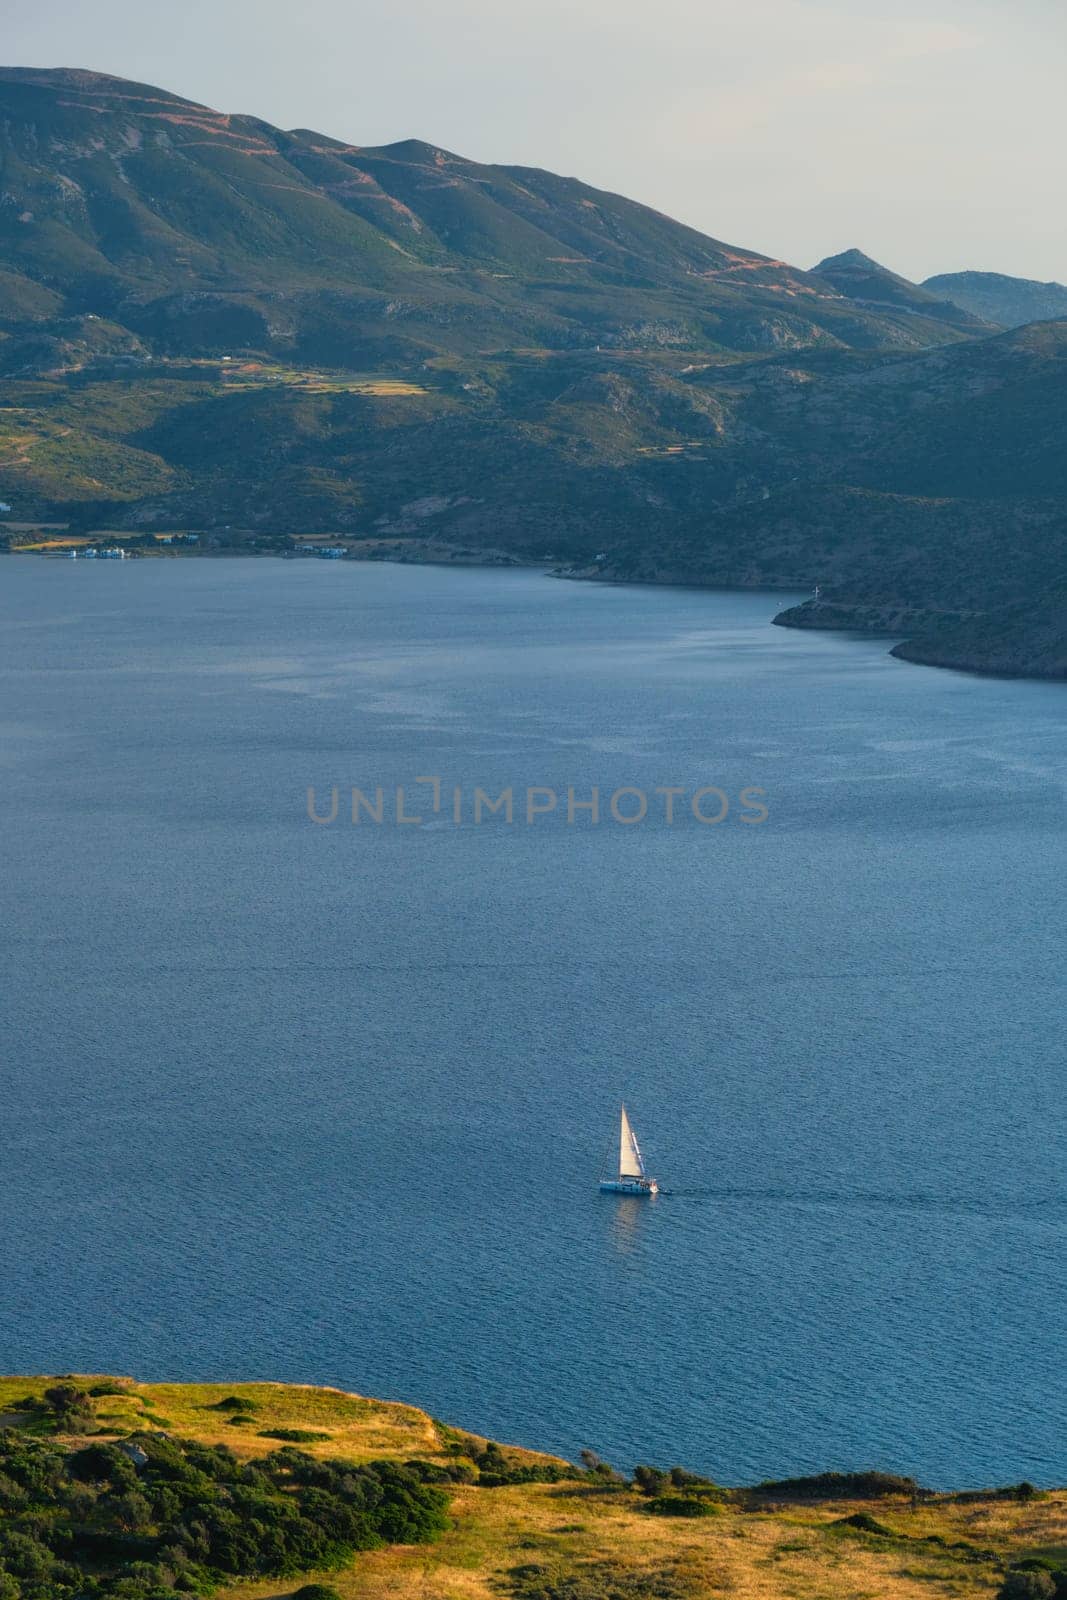 Yacht in Aegean sea near Milos island. Milos island, Greece by dimol